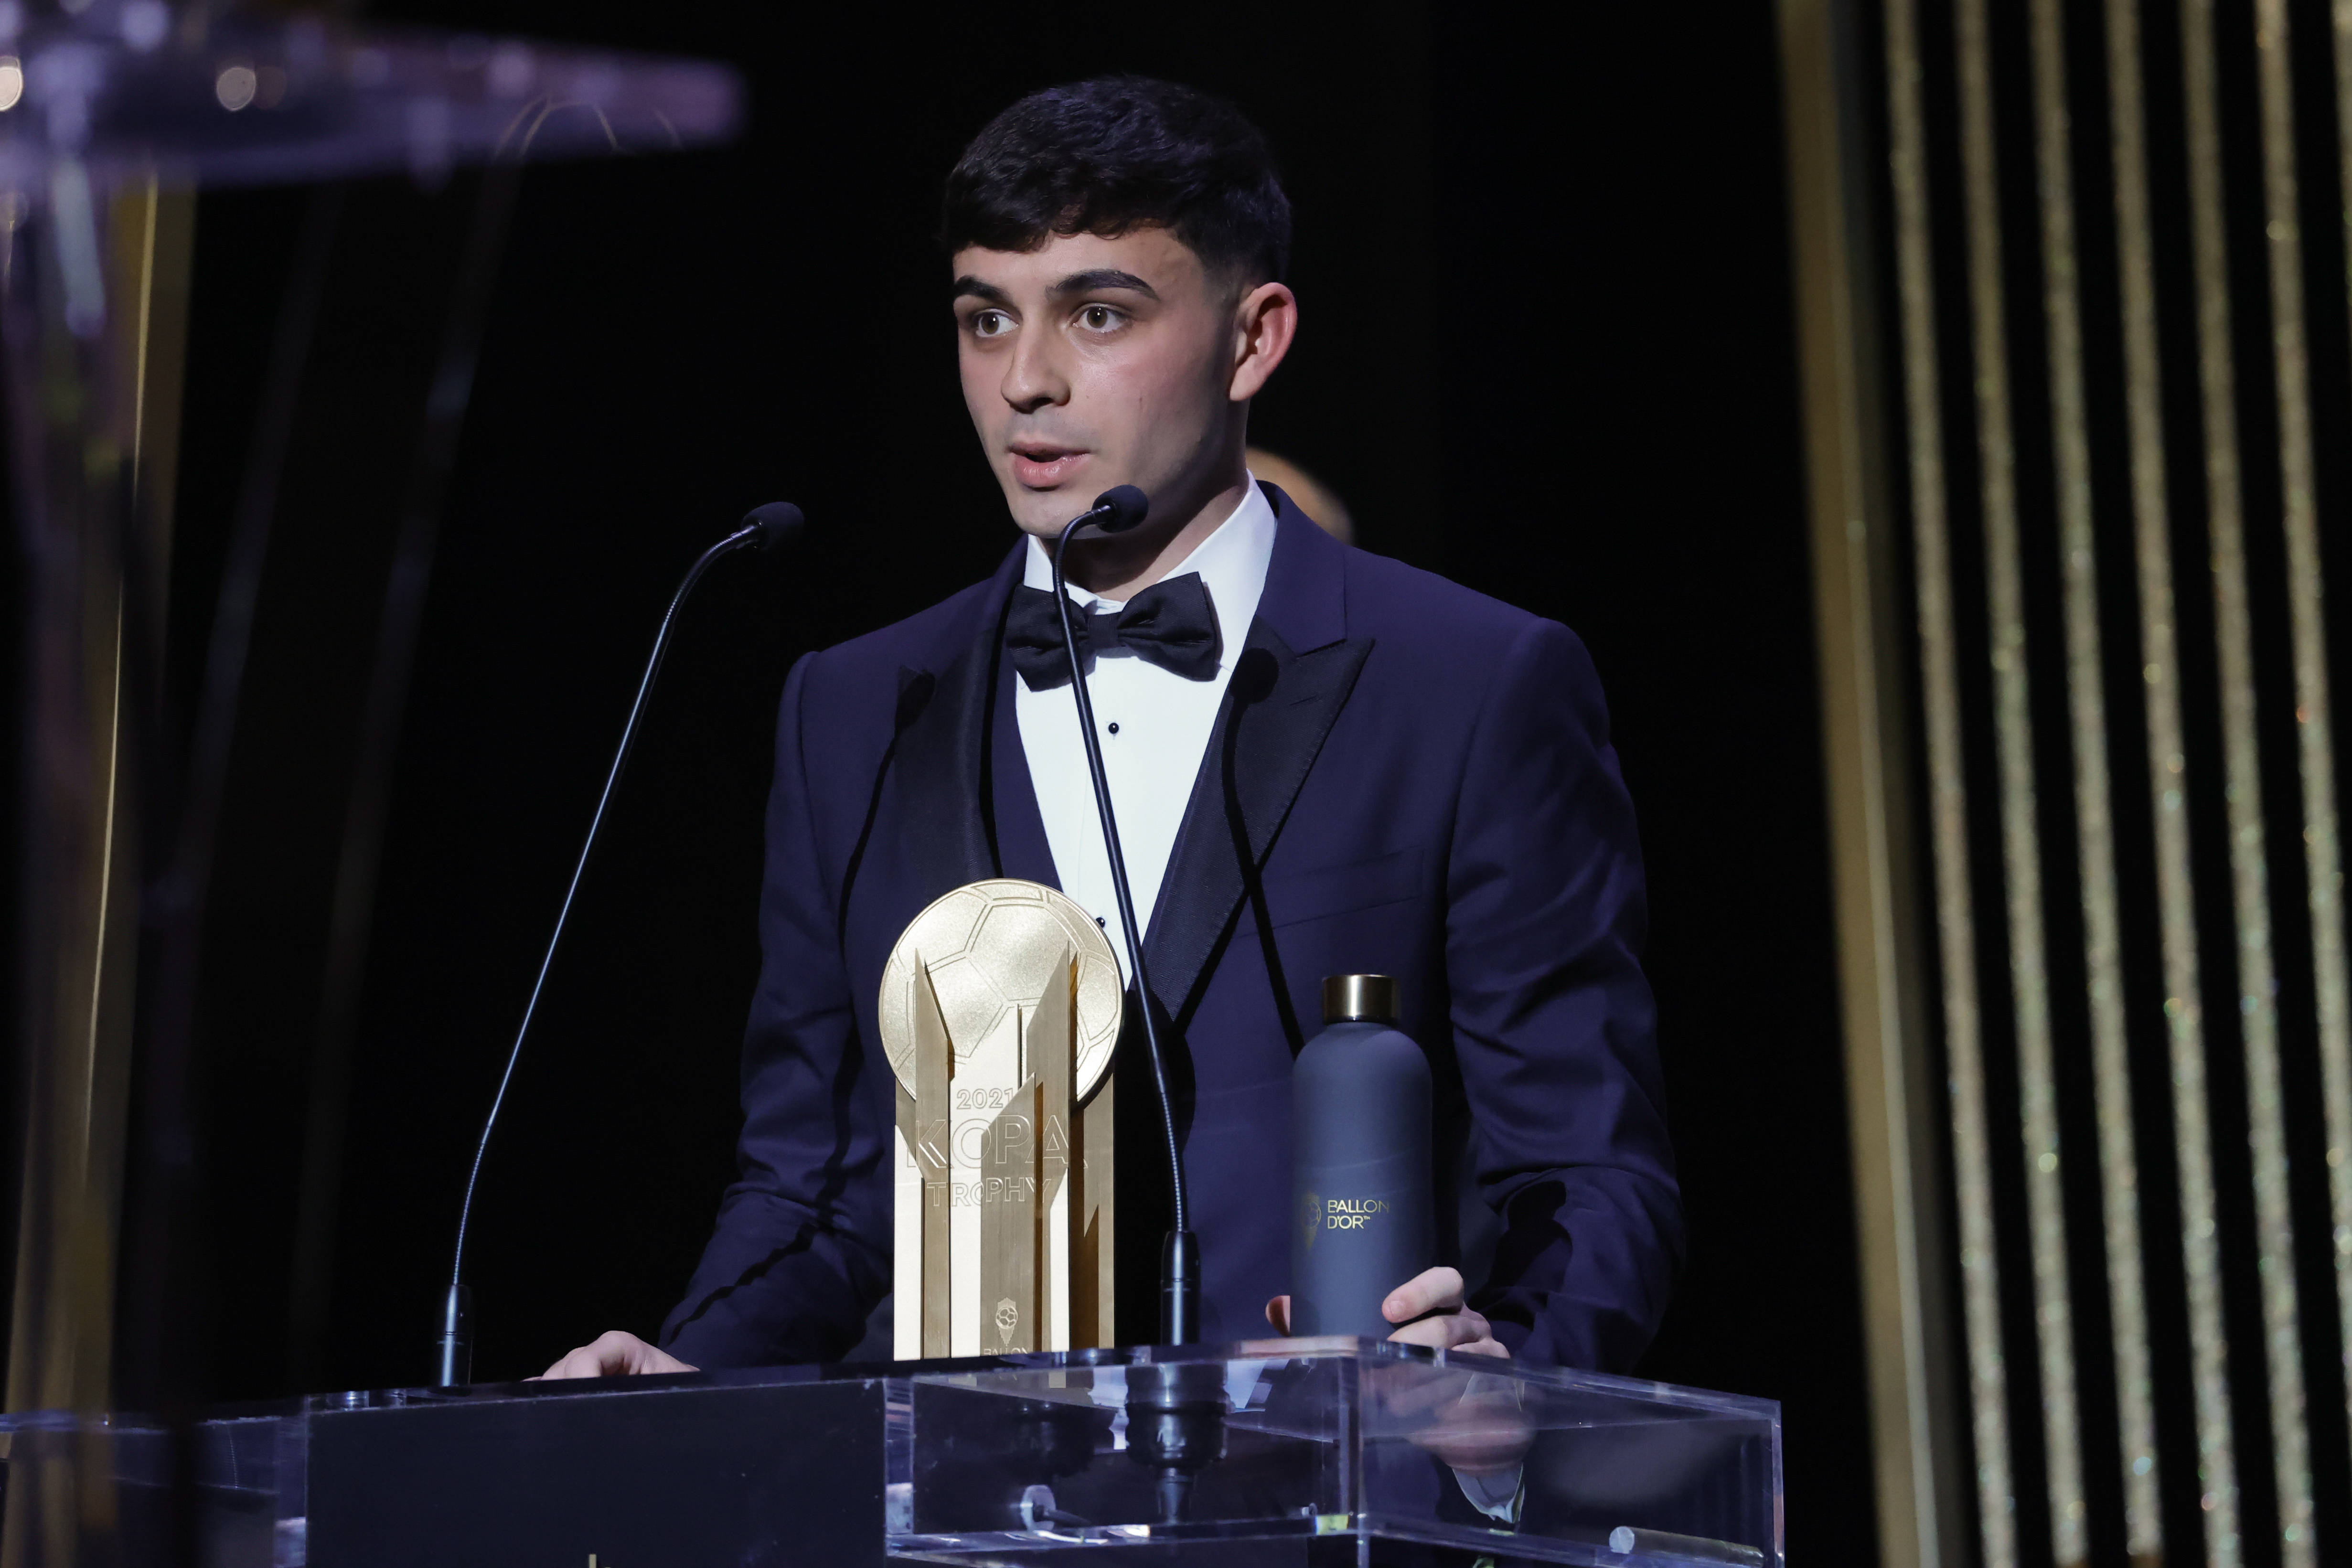 11月29日,西班牙中场佩德里获得21岁以下最佳年轻球员的科帕奖后发表